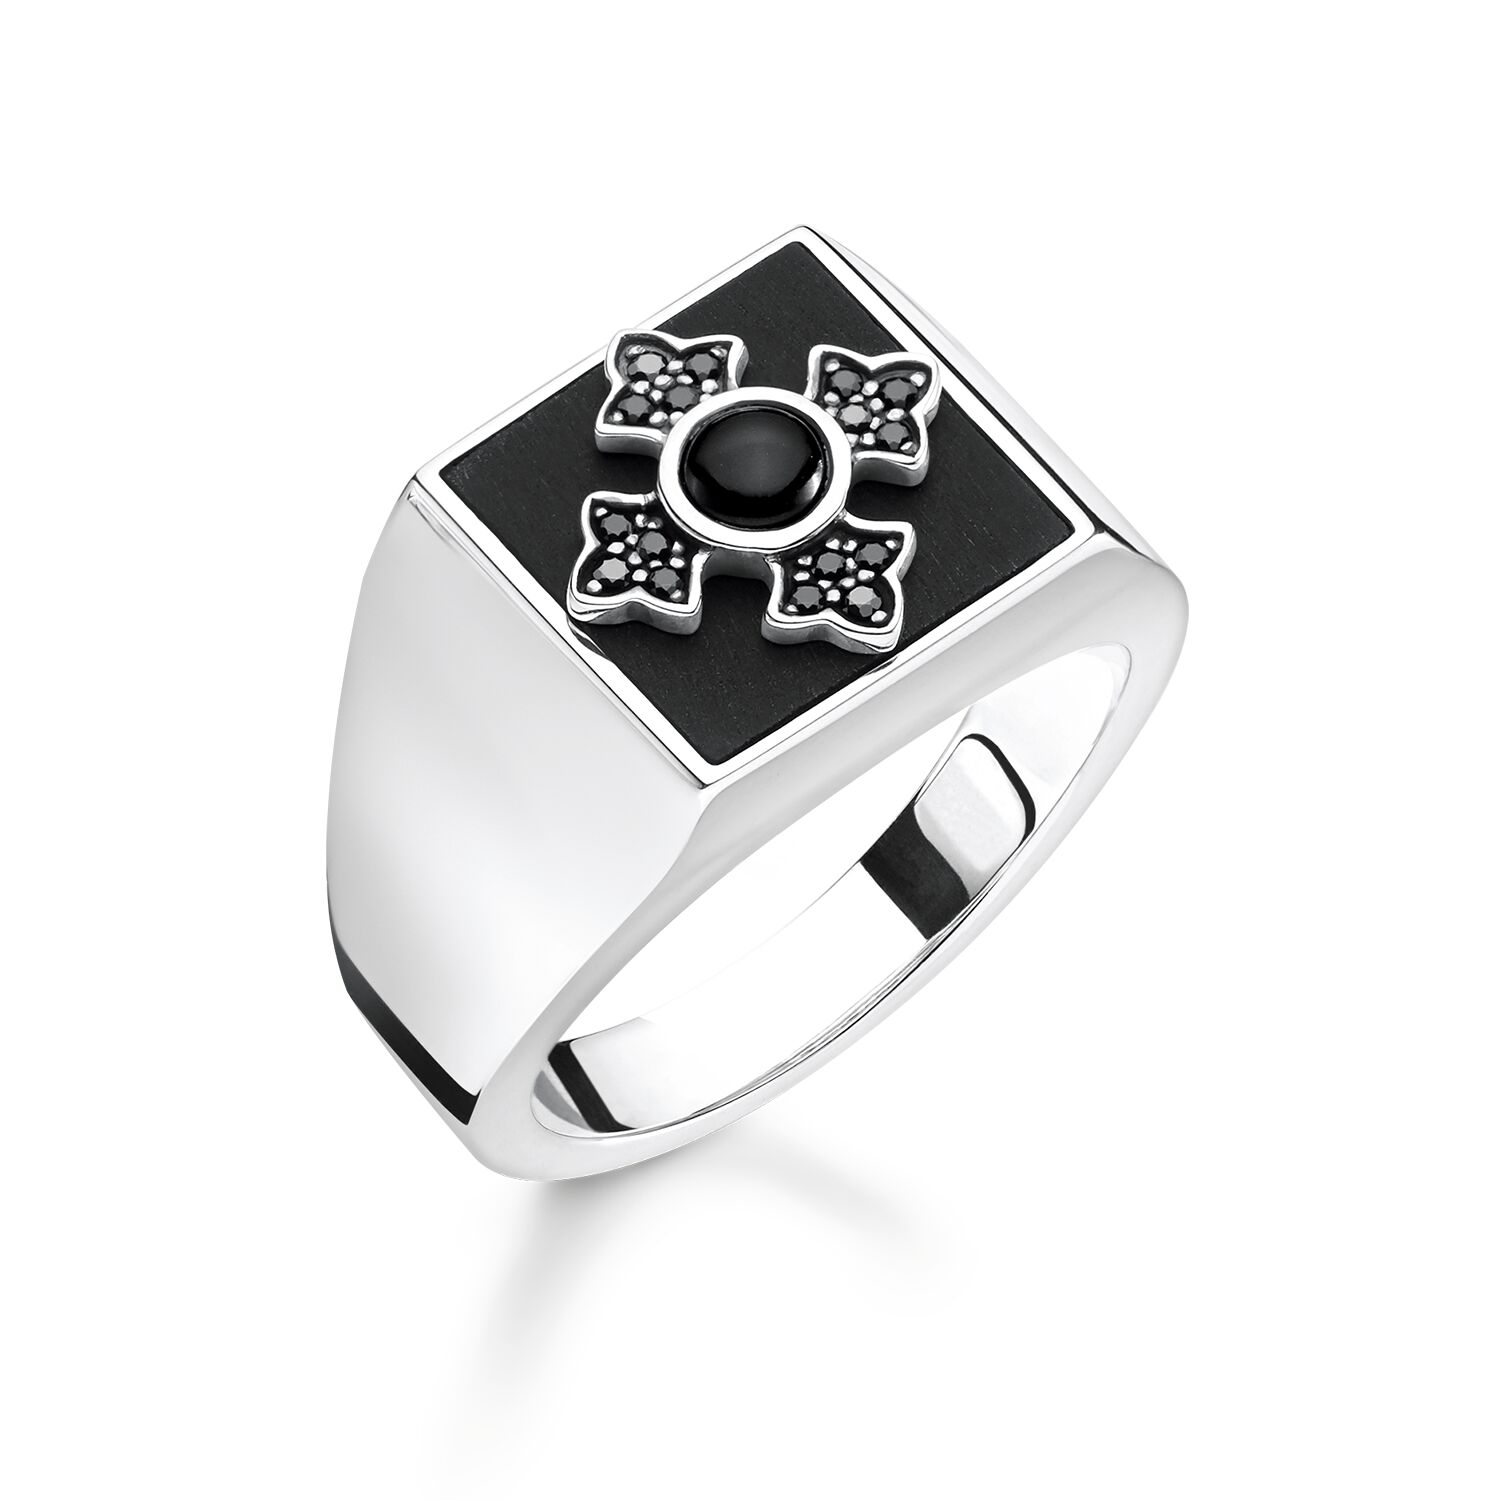 Velkoobchod přizpůsobený pánský prsten OEM/ODM Výrobce šperků ze stříbra 925, které lze gravírovat